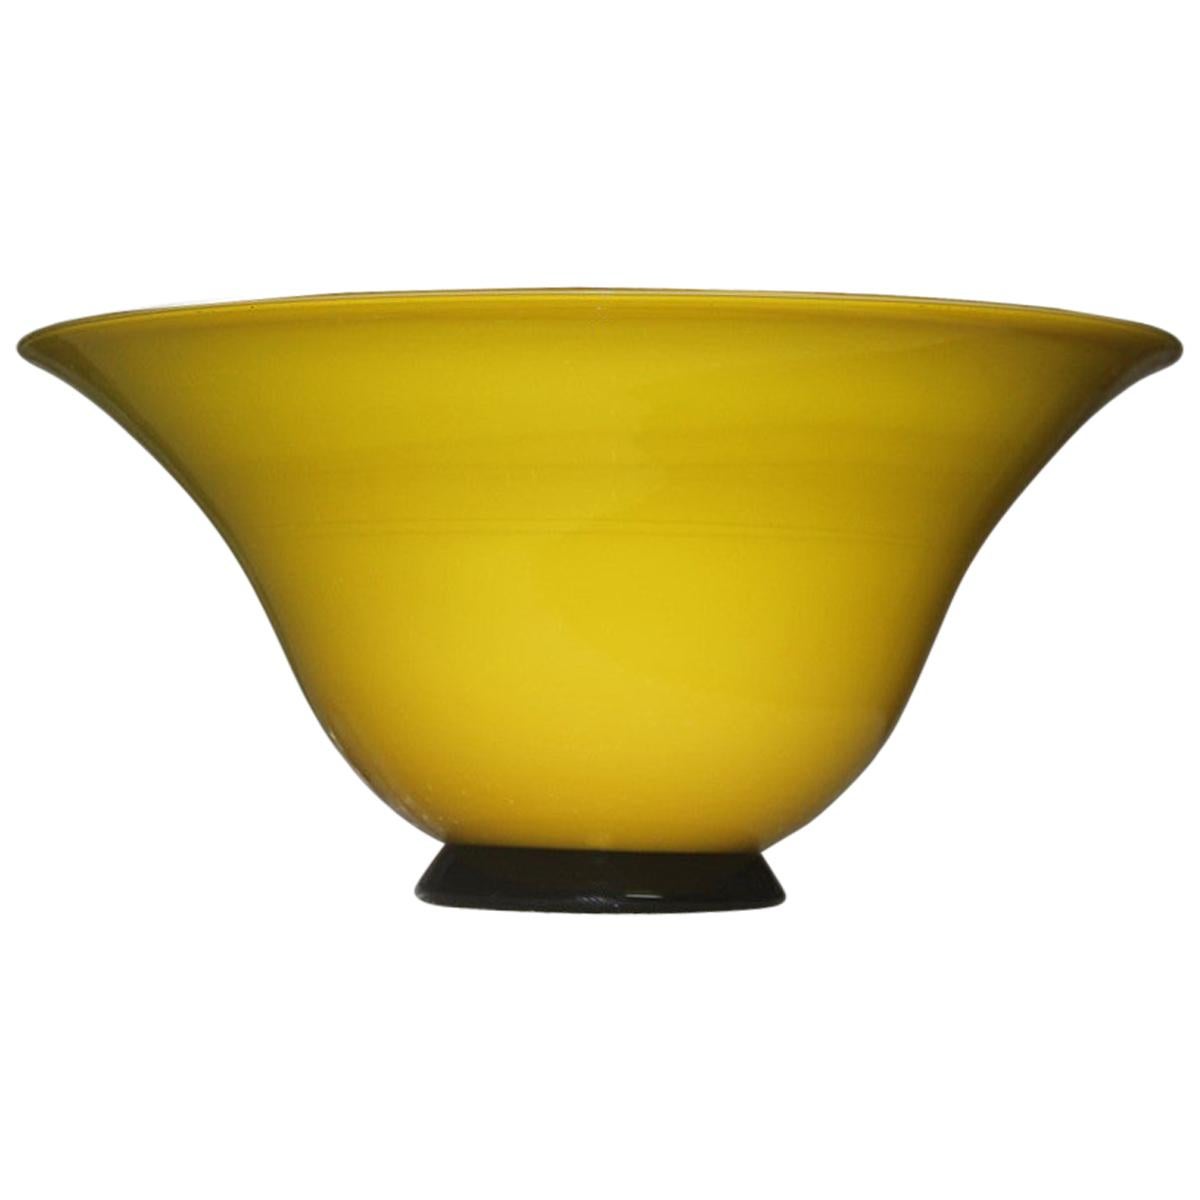 Murano Glas Becher Vase Gelb Schwarz 1989 Mendini zugeschrieben Italienisches Design/One